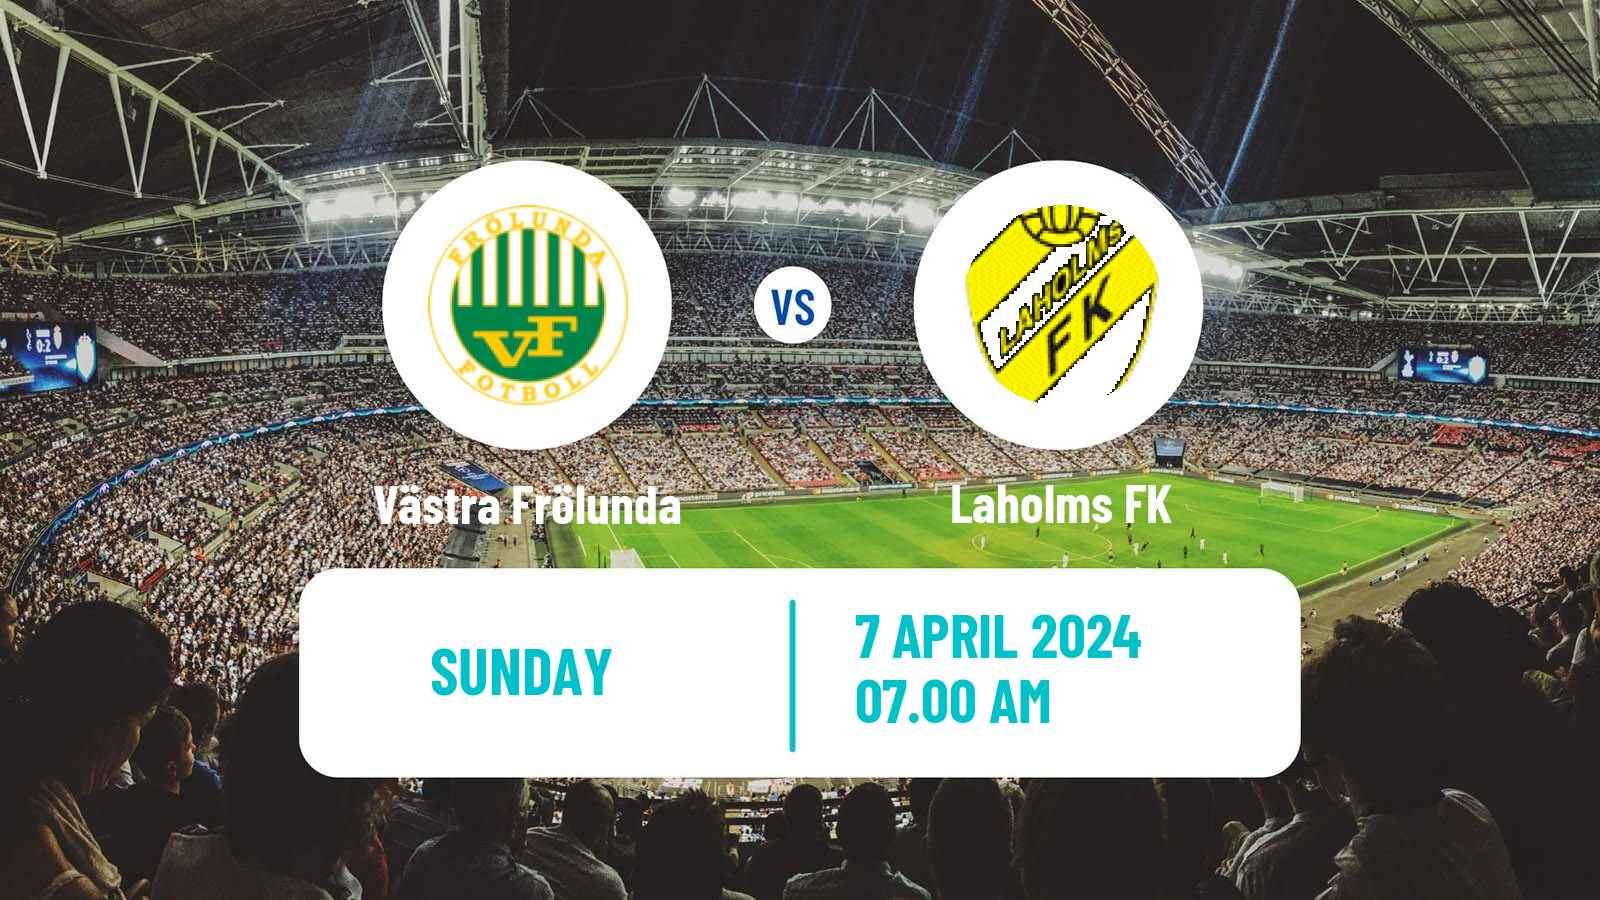 Soccer Swedish Division 2 - Västra Götaland Västra Frölunda - Laholms